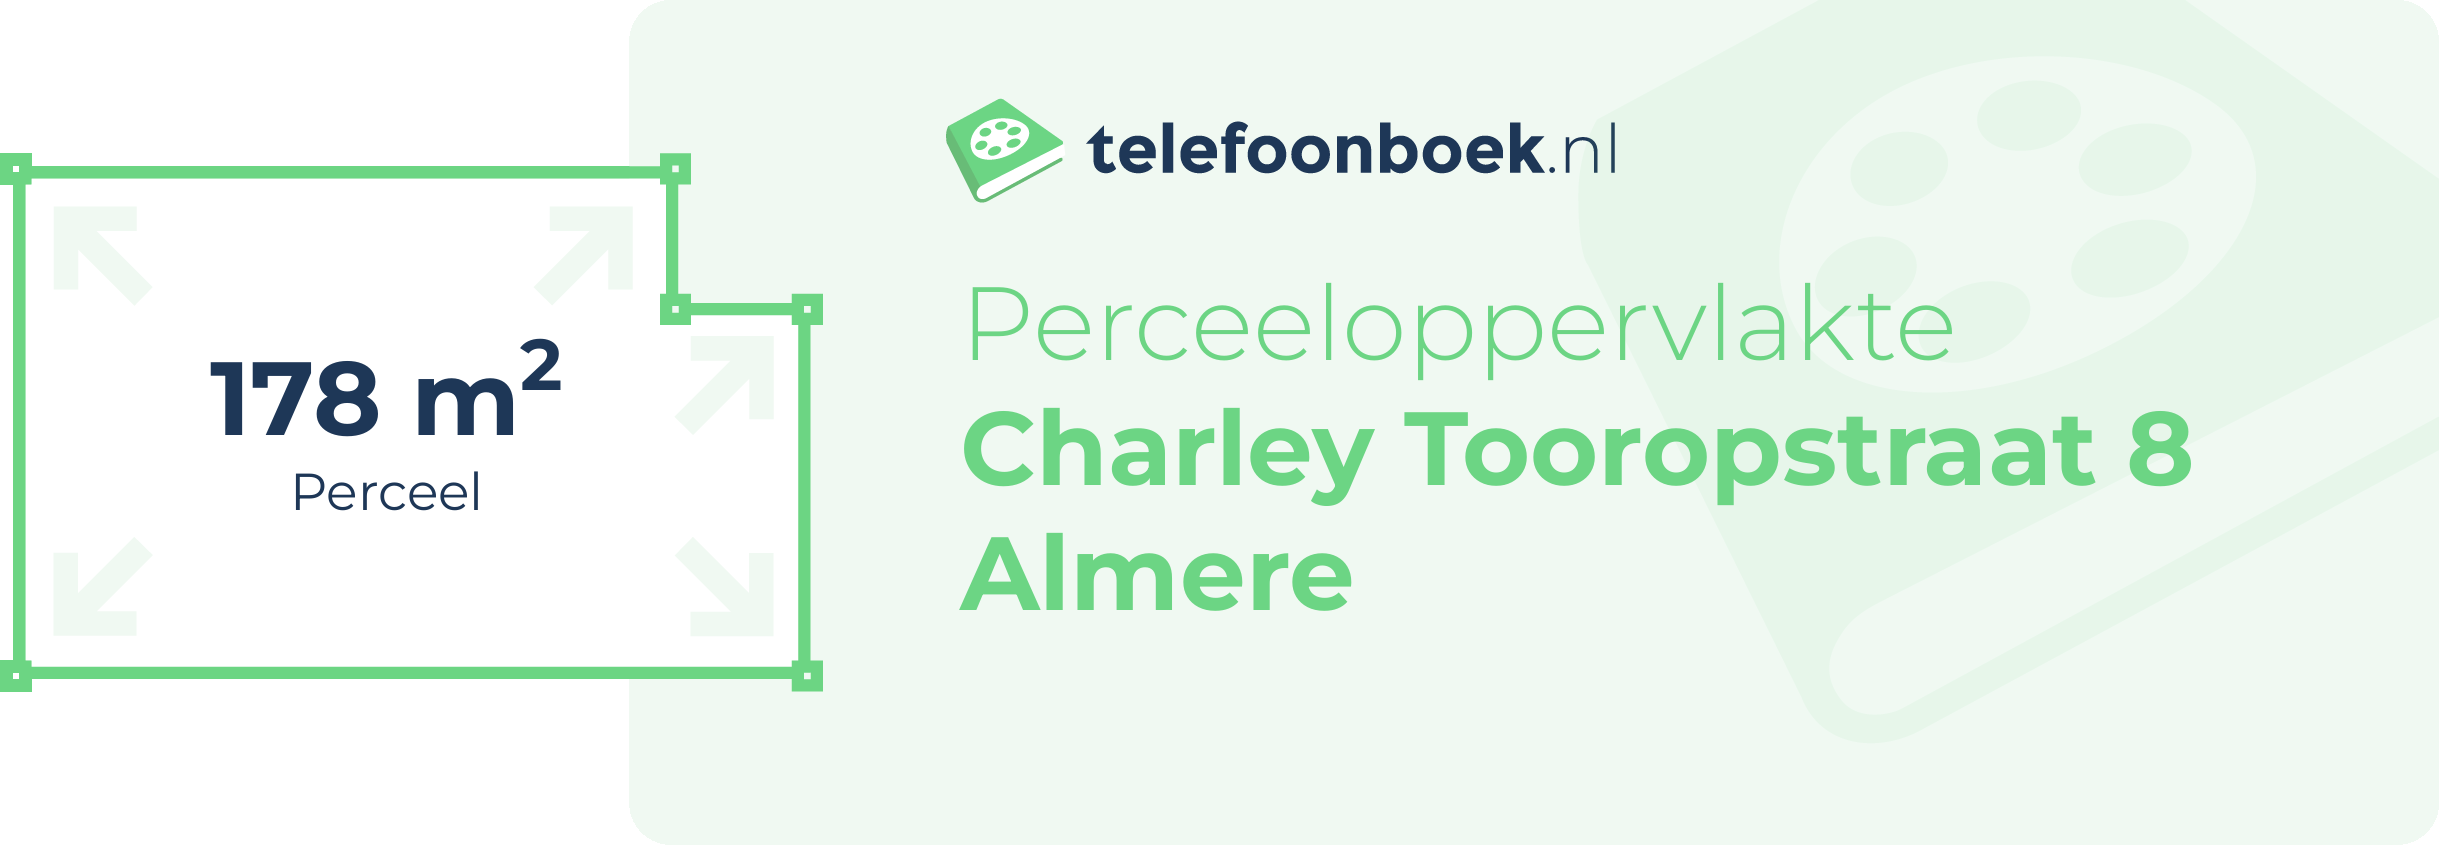 Perceeloppervlakte Charley Tooropstraat 8 Almere